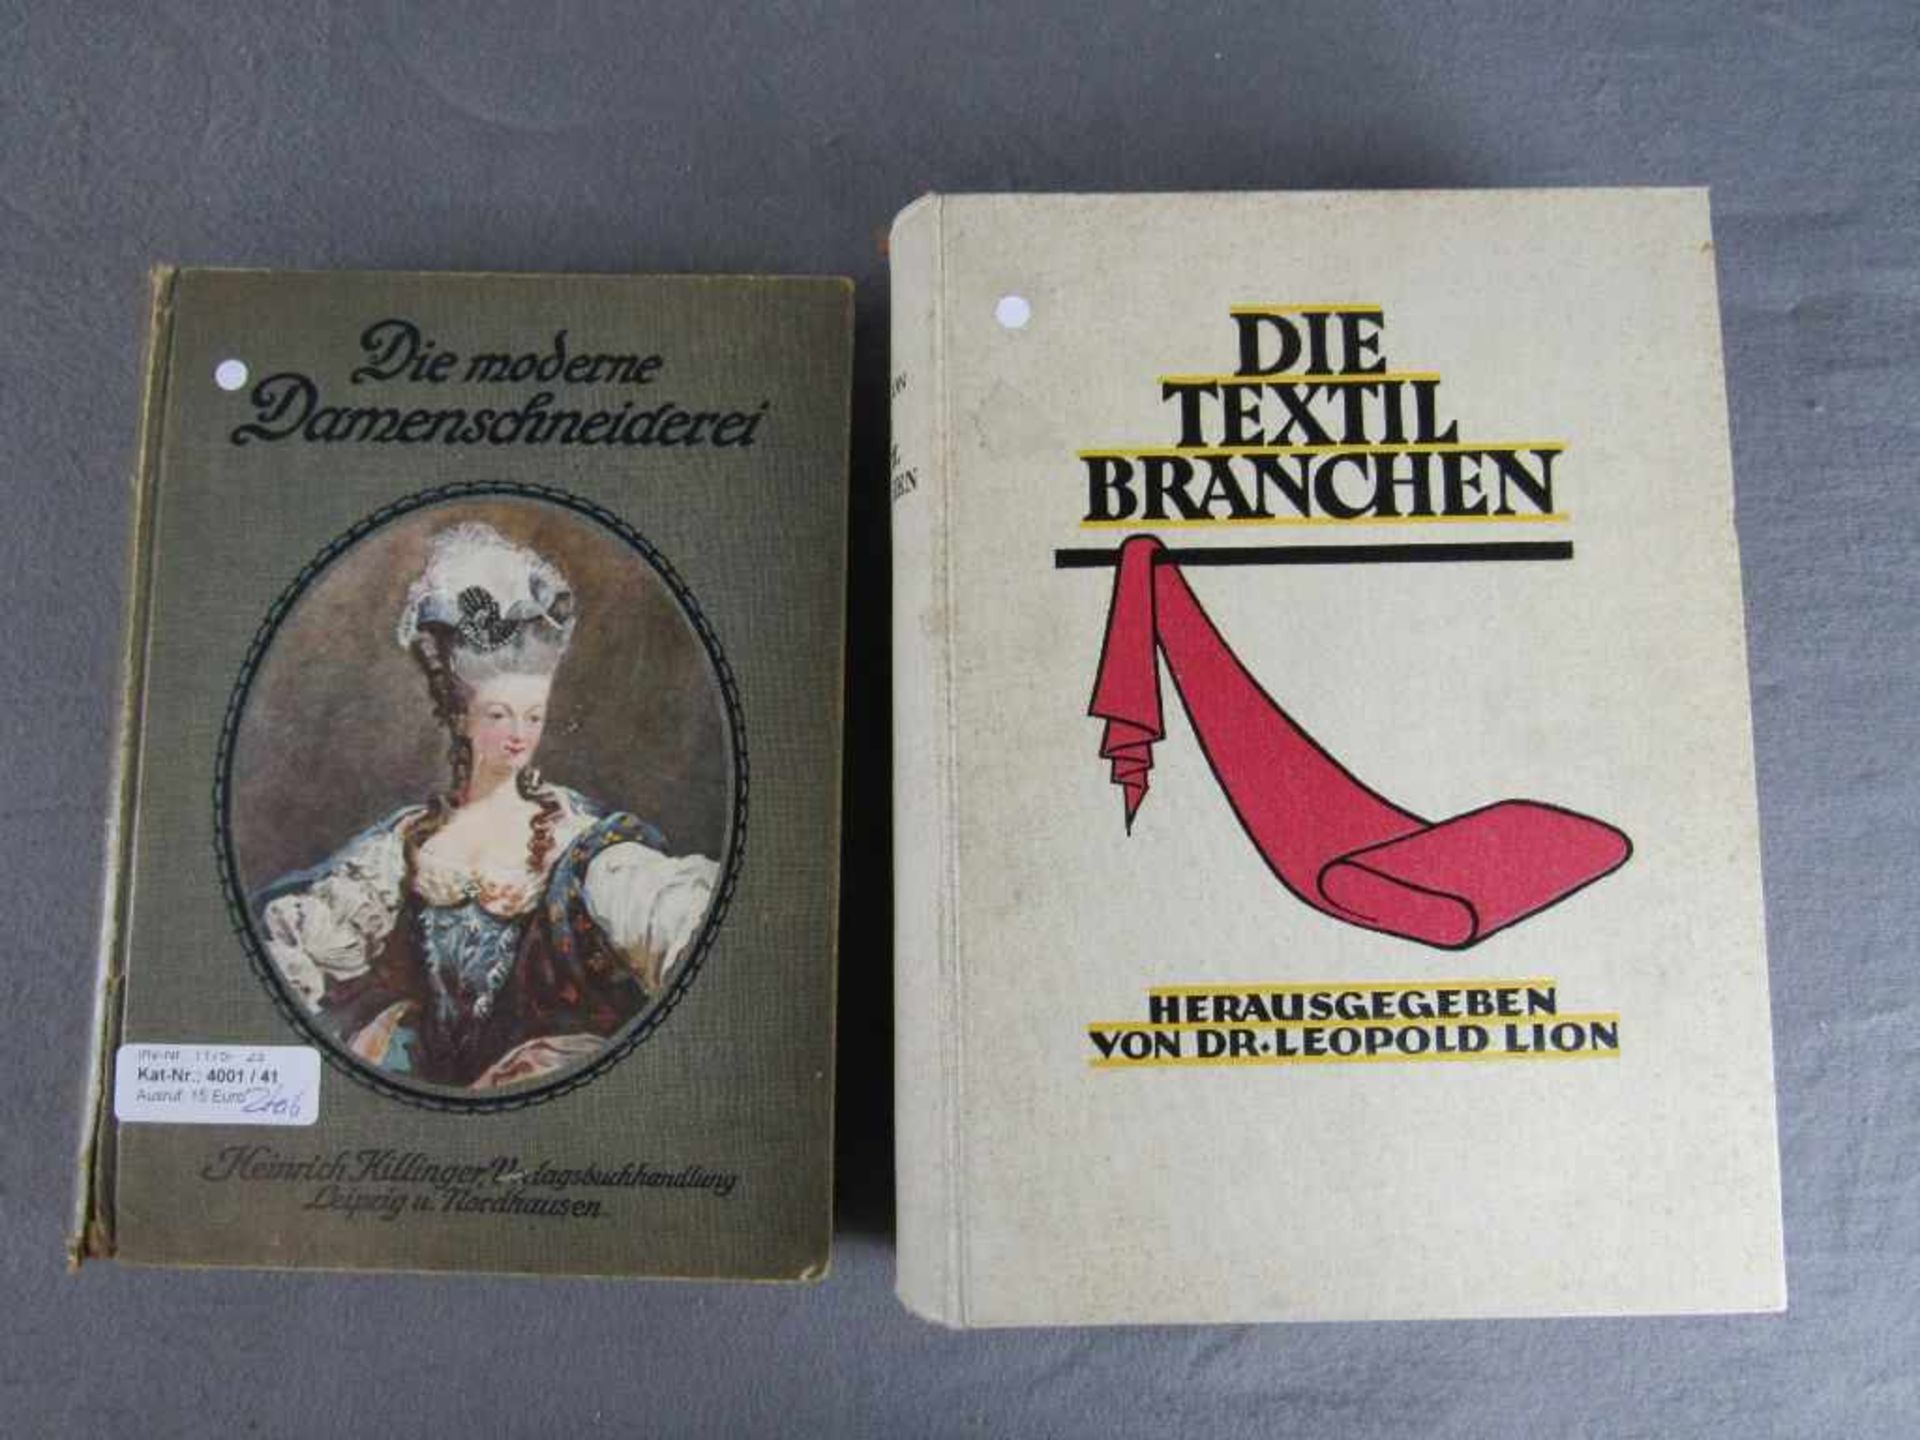 Zwei schöne Bücher antik über die Textilbranche bzw. Damenschneiderei